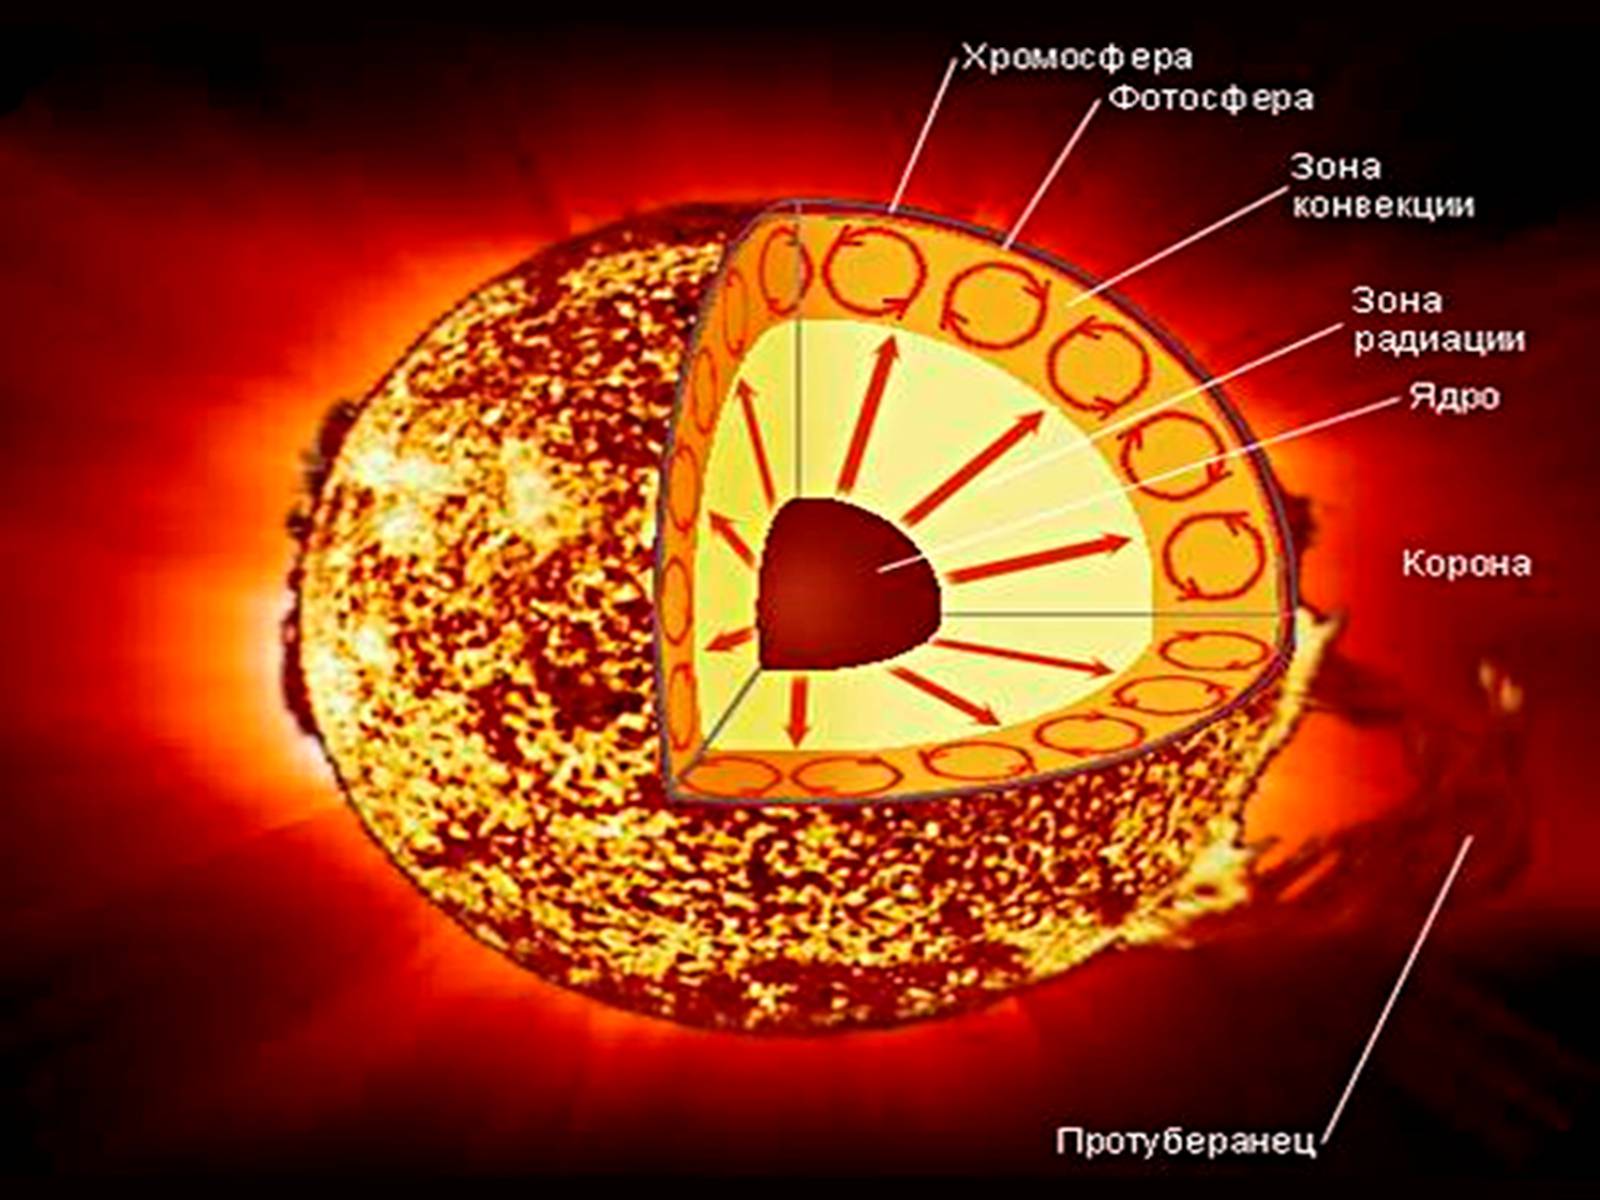 Внешний слой солнечной атмосферы. Строение атмосферы солнца Фотосфера хромосфера Солнечная корона. Строение солнца хромосфера Фотосфера. Внутреннее строение солнца Фотосфера. Строение солнца схема.